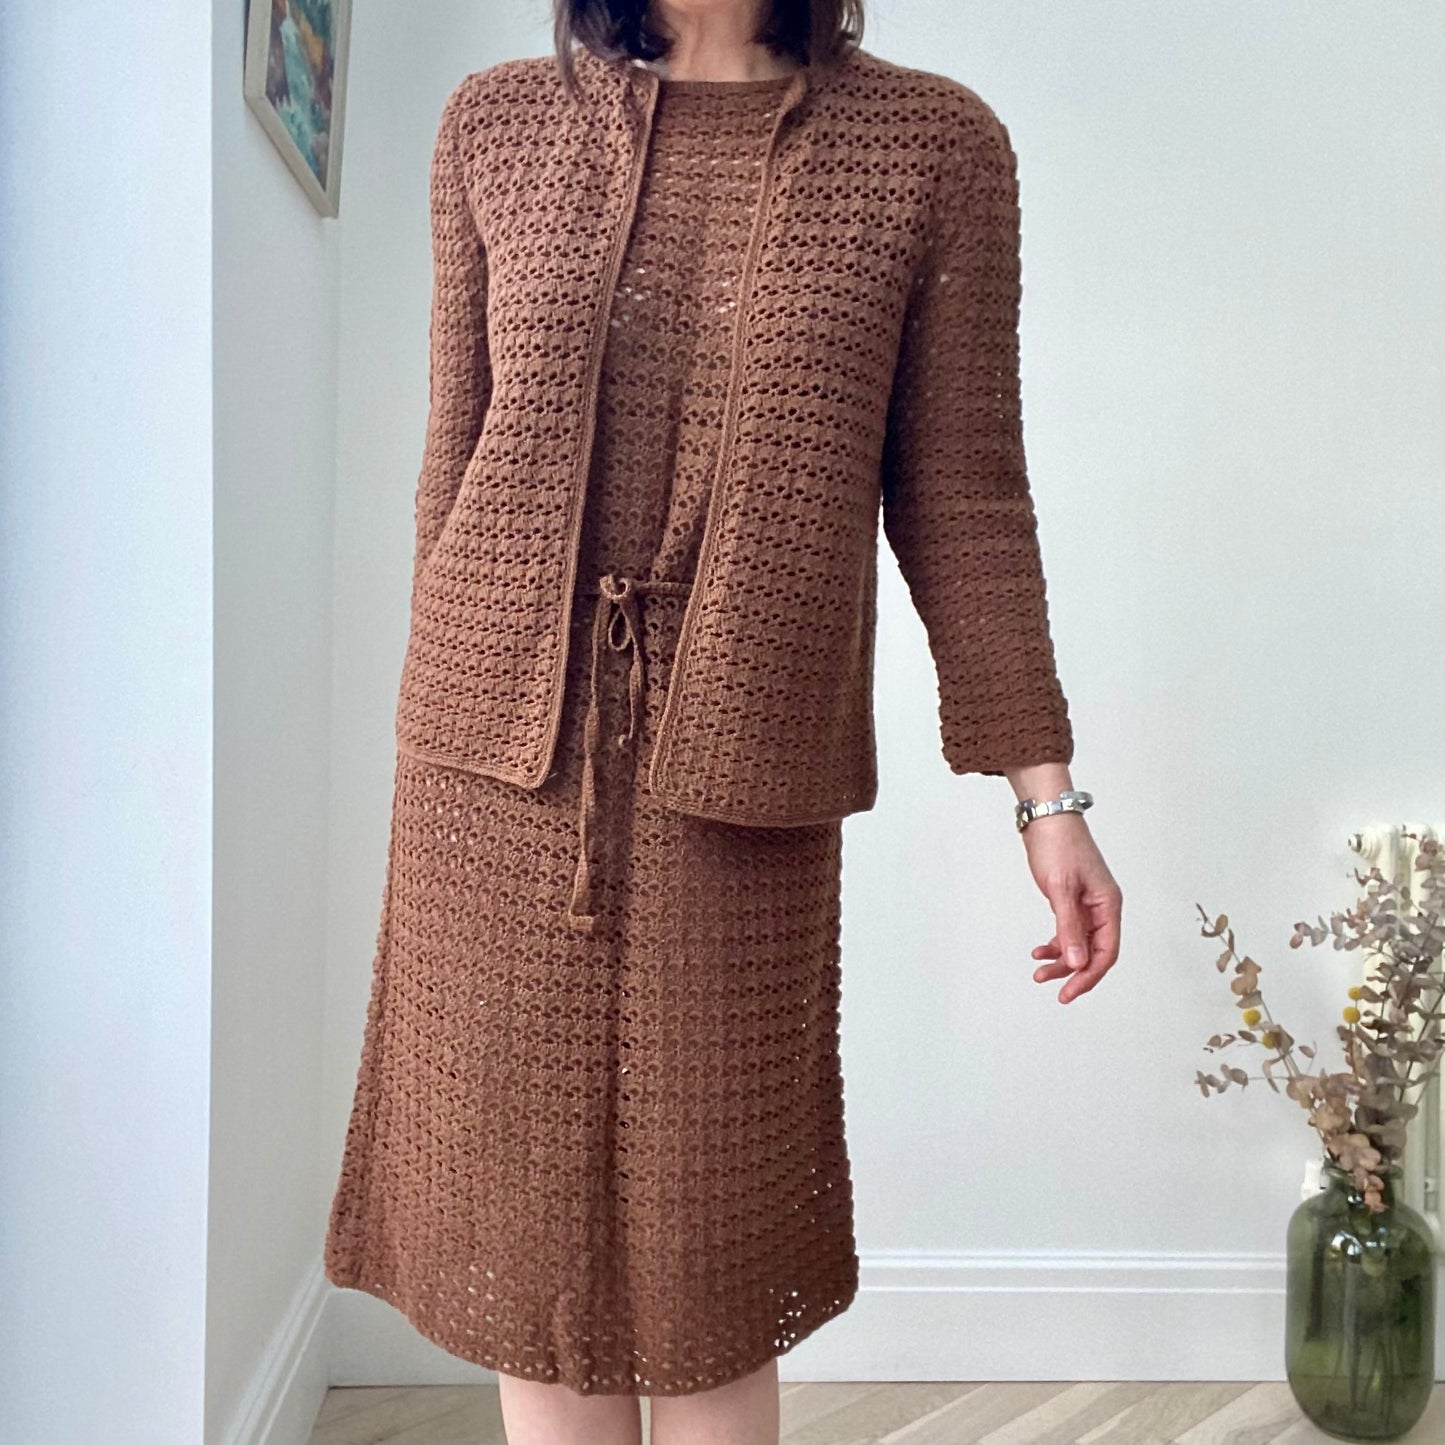 Brown 60s Dress Suit